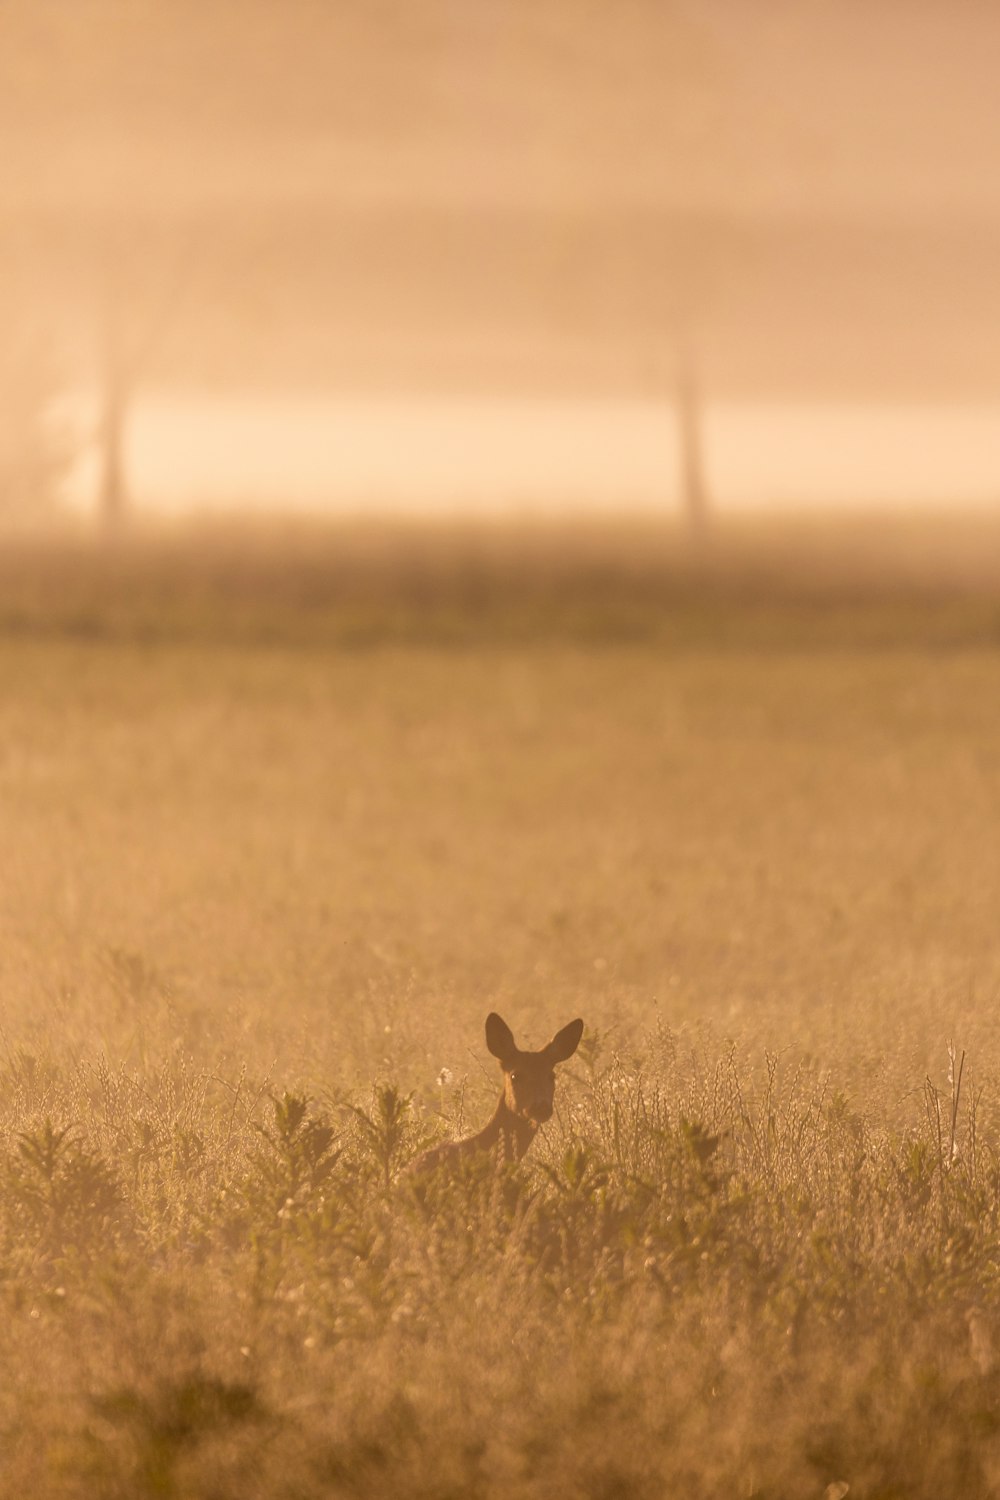 a rabbit in a field